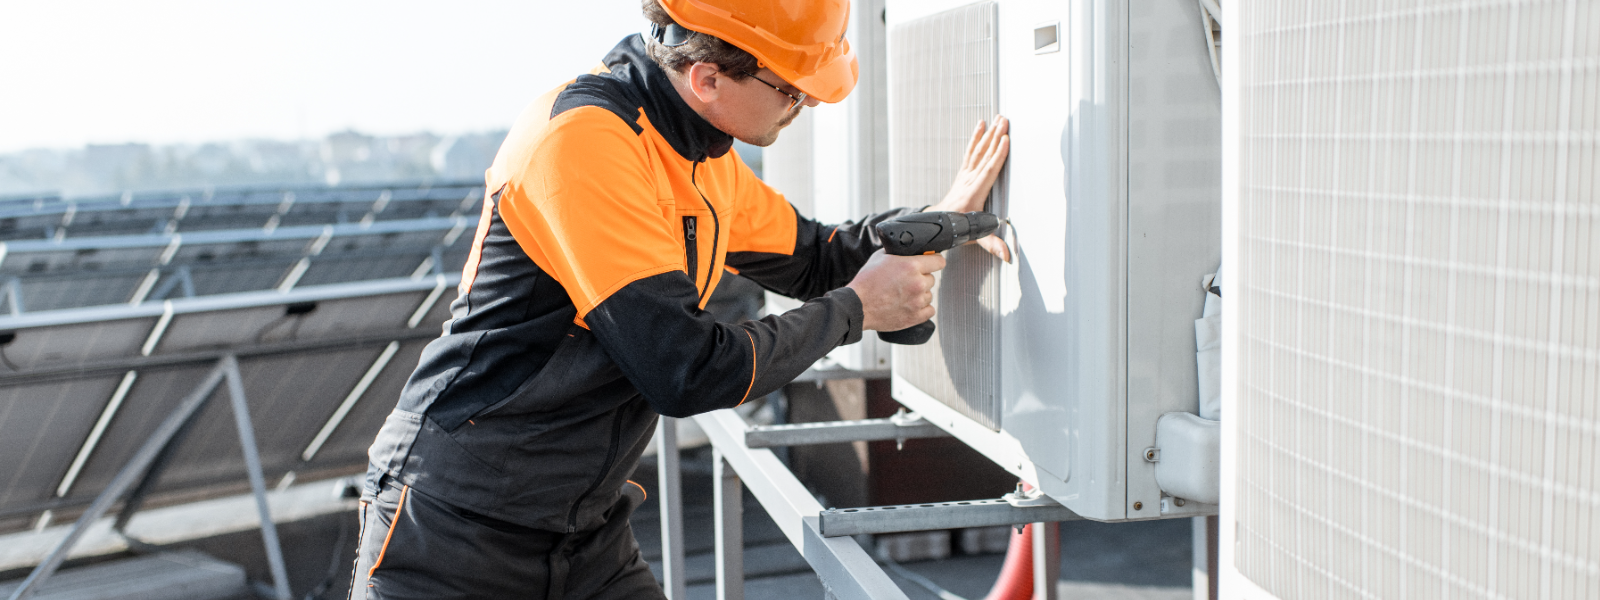 CROMVENT OÜ - Oleme ettevõte, mis on spetsialiseerunud ventilatsioonitorustike ehitamisele.